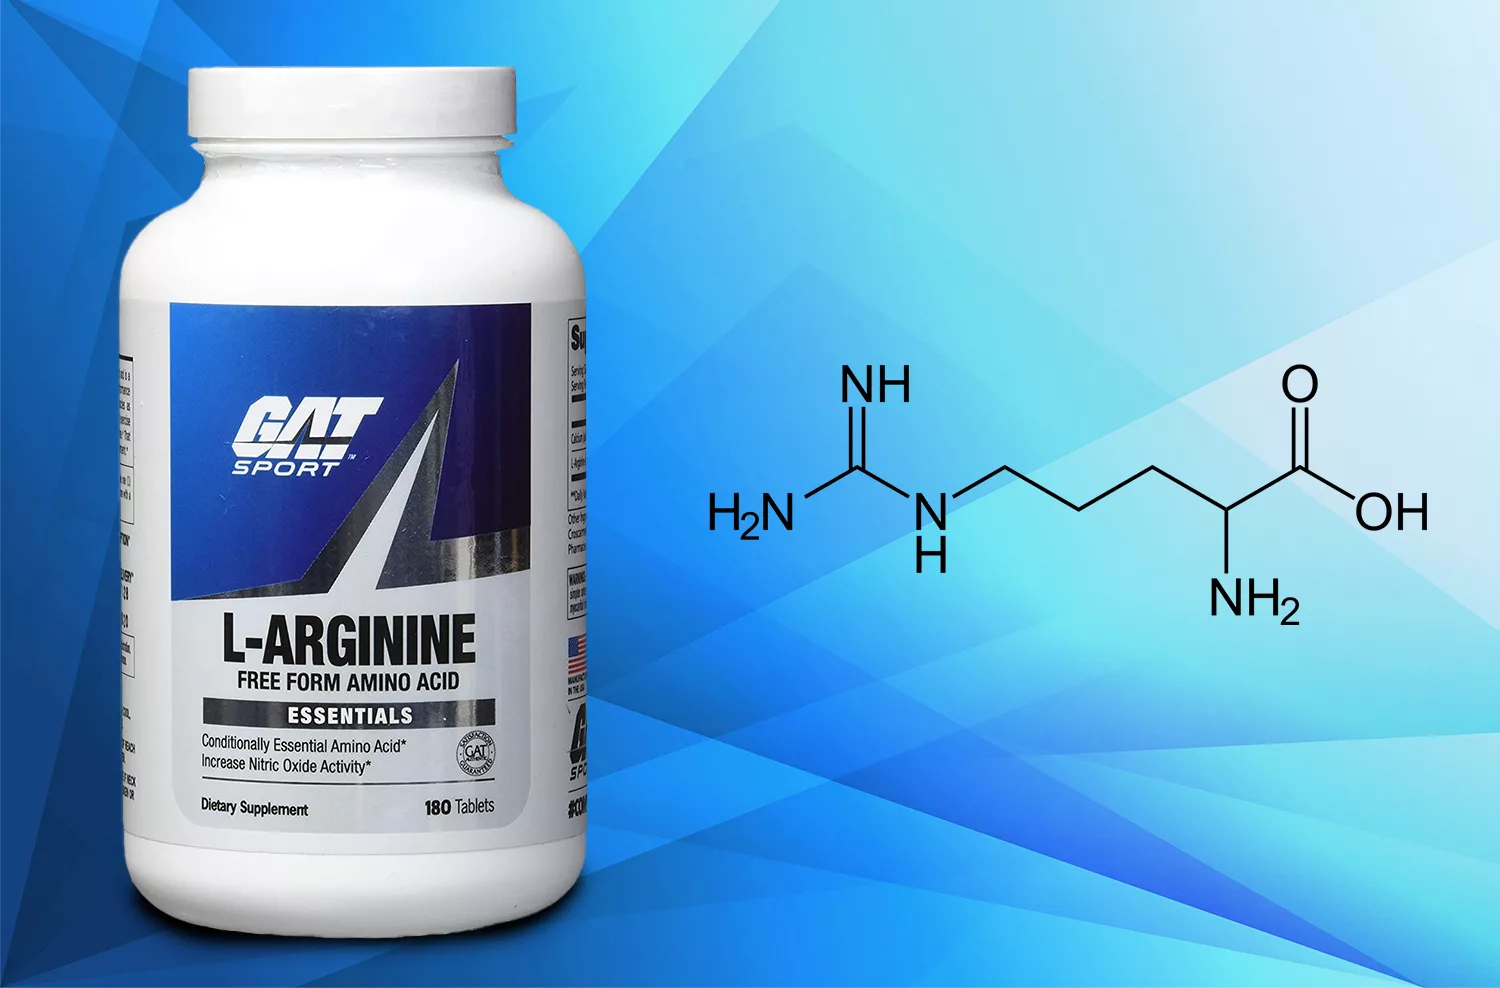 Benefits of L-Arginine